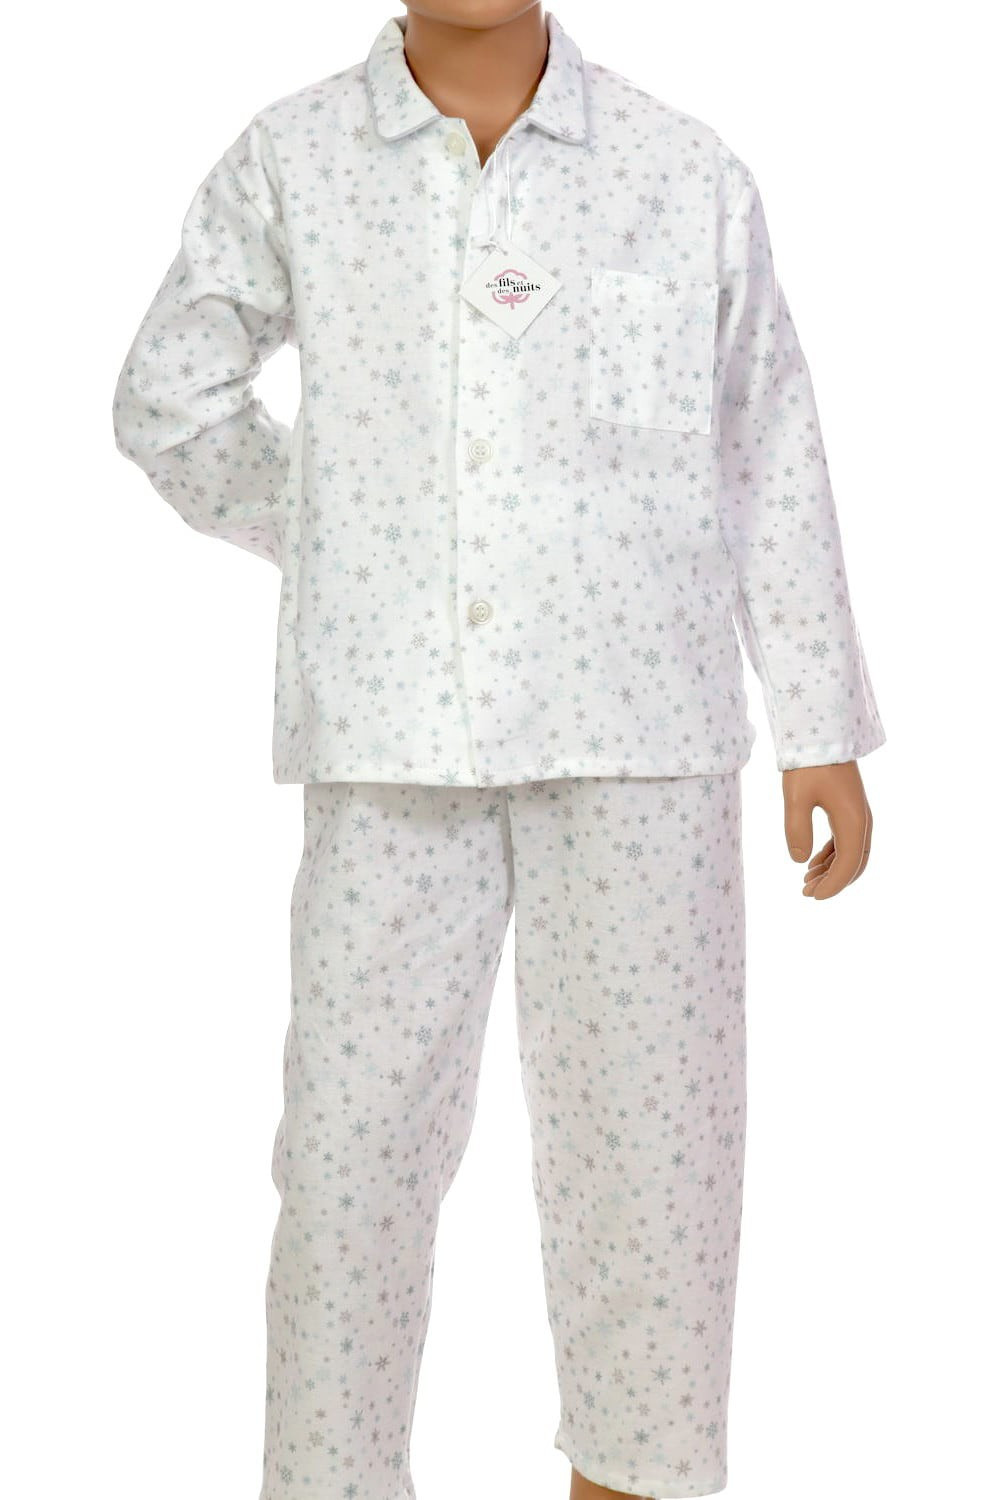 Veste Pilou Enfant Grise – Pyjama Pilou Pilou